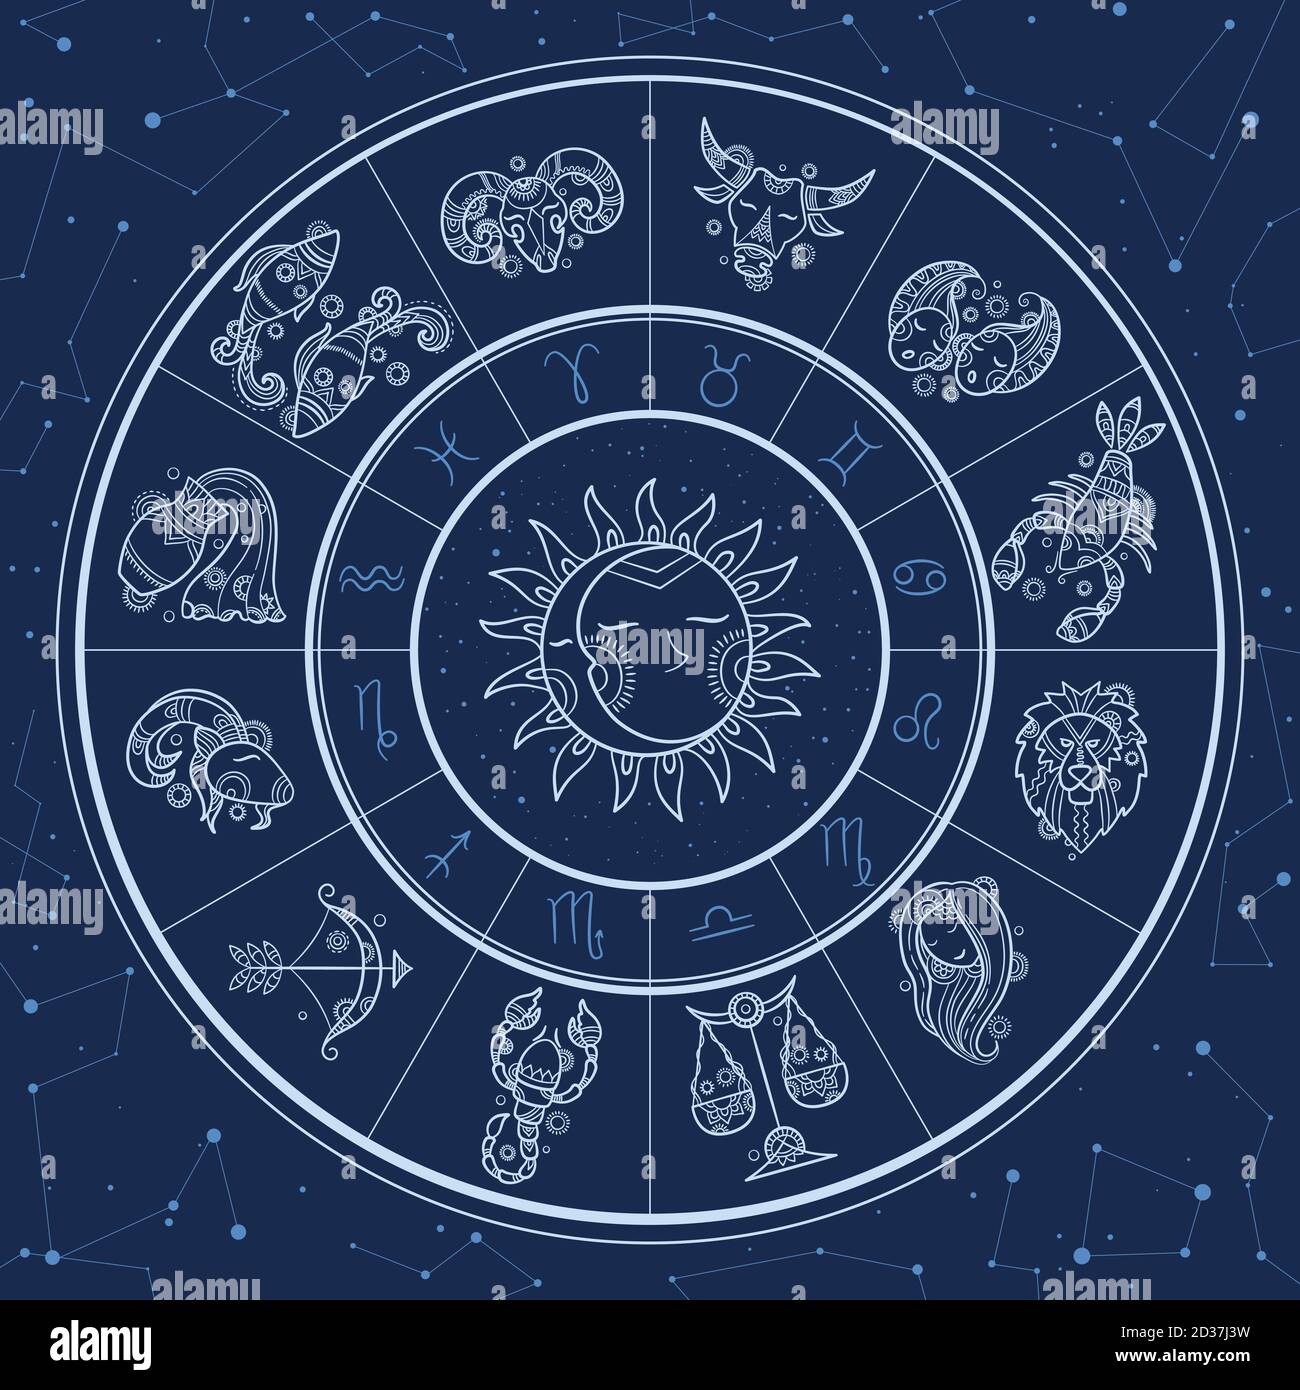 Cercle d'astrologie. Infographie magique avec symboles du zodiaque horoscopes gémeaux poissons de roue gémeaux aries modèle de vecteur lion Illustration de Vecteur